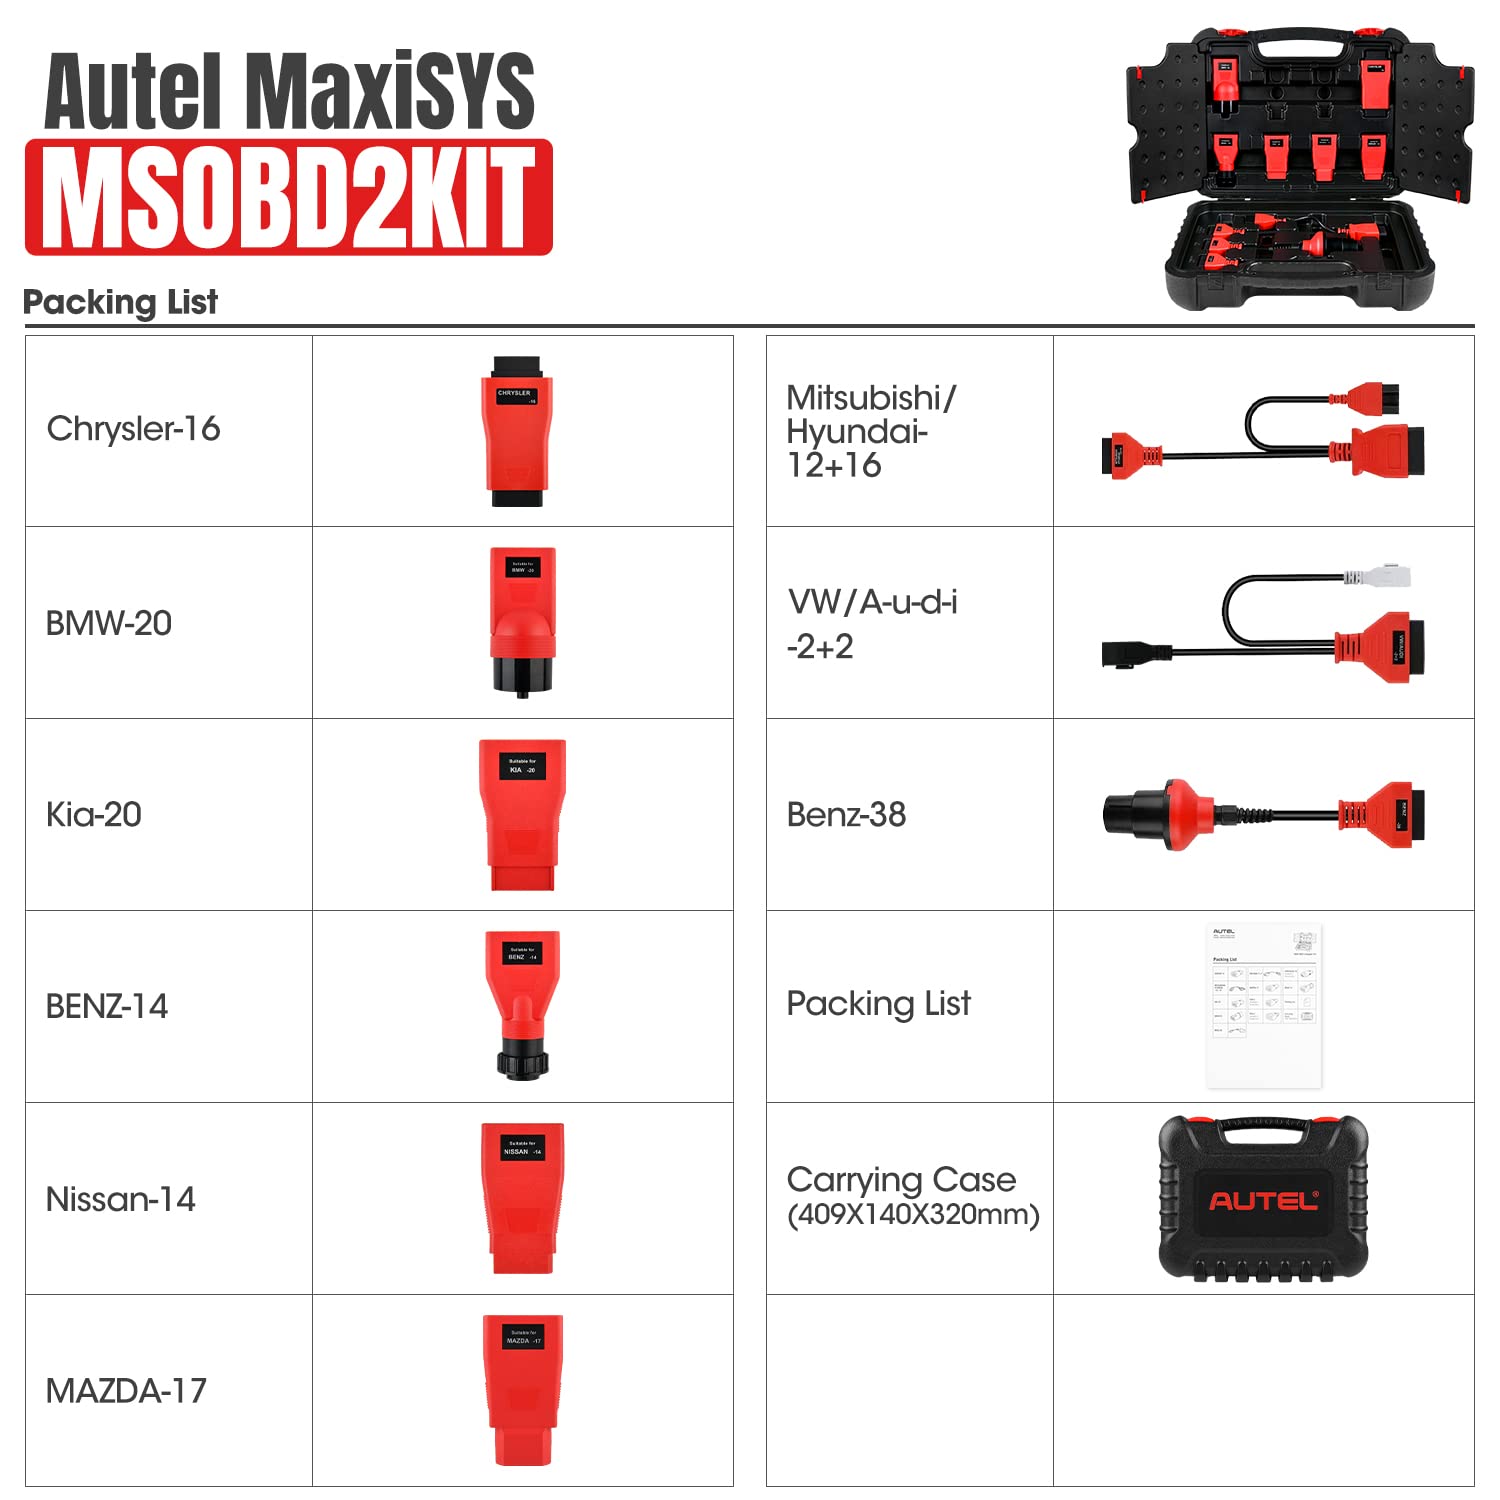 Autel MaxiSYS MSOBD2KIT Kit adattatore non OBDII incluso: Nissan-14, Mitsubishi/Hyundai 12+16, Kia-20, BMW-20, Benz-38, VW/Audi-2+2, Mazda-17, Chrysler-16 e Benz -14 9 connettore